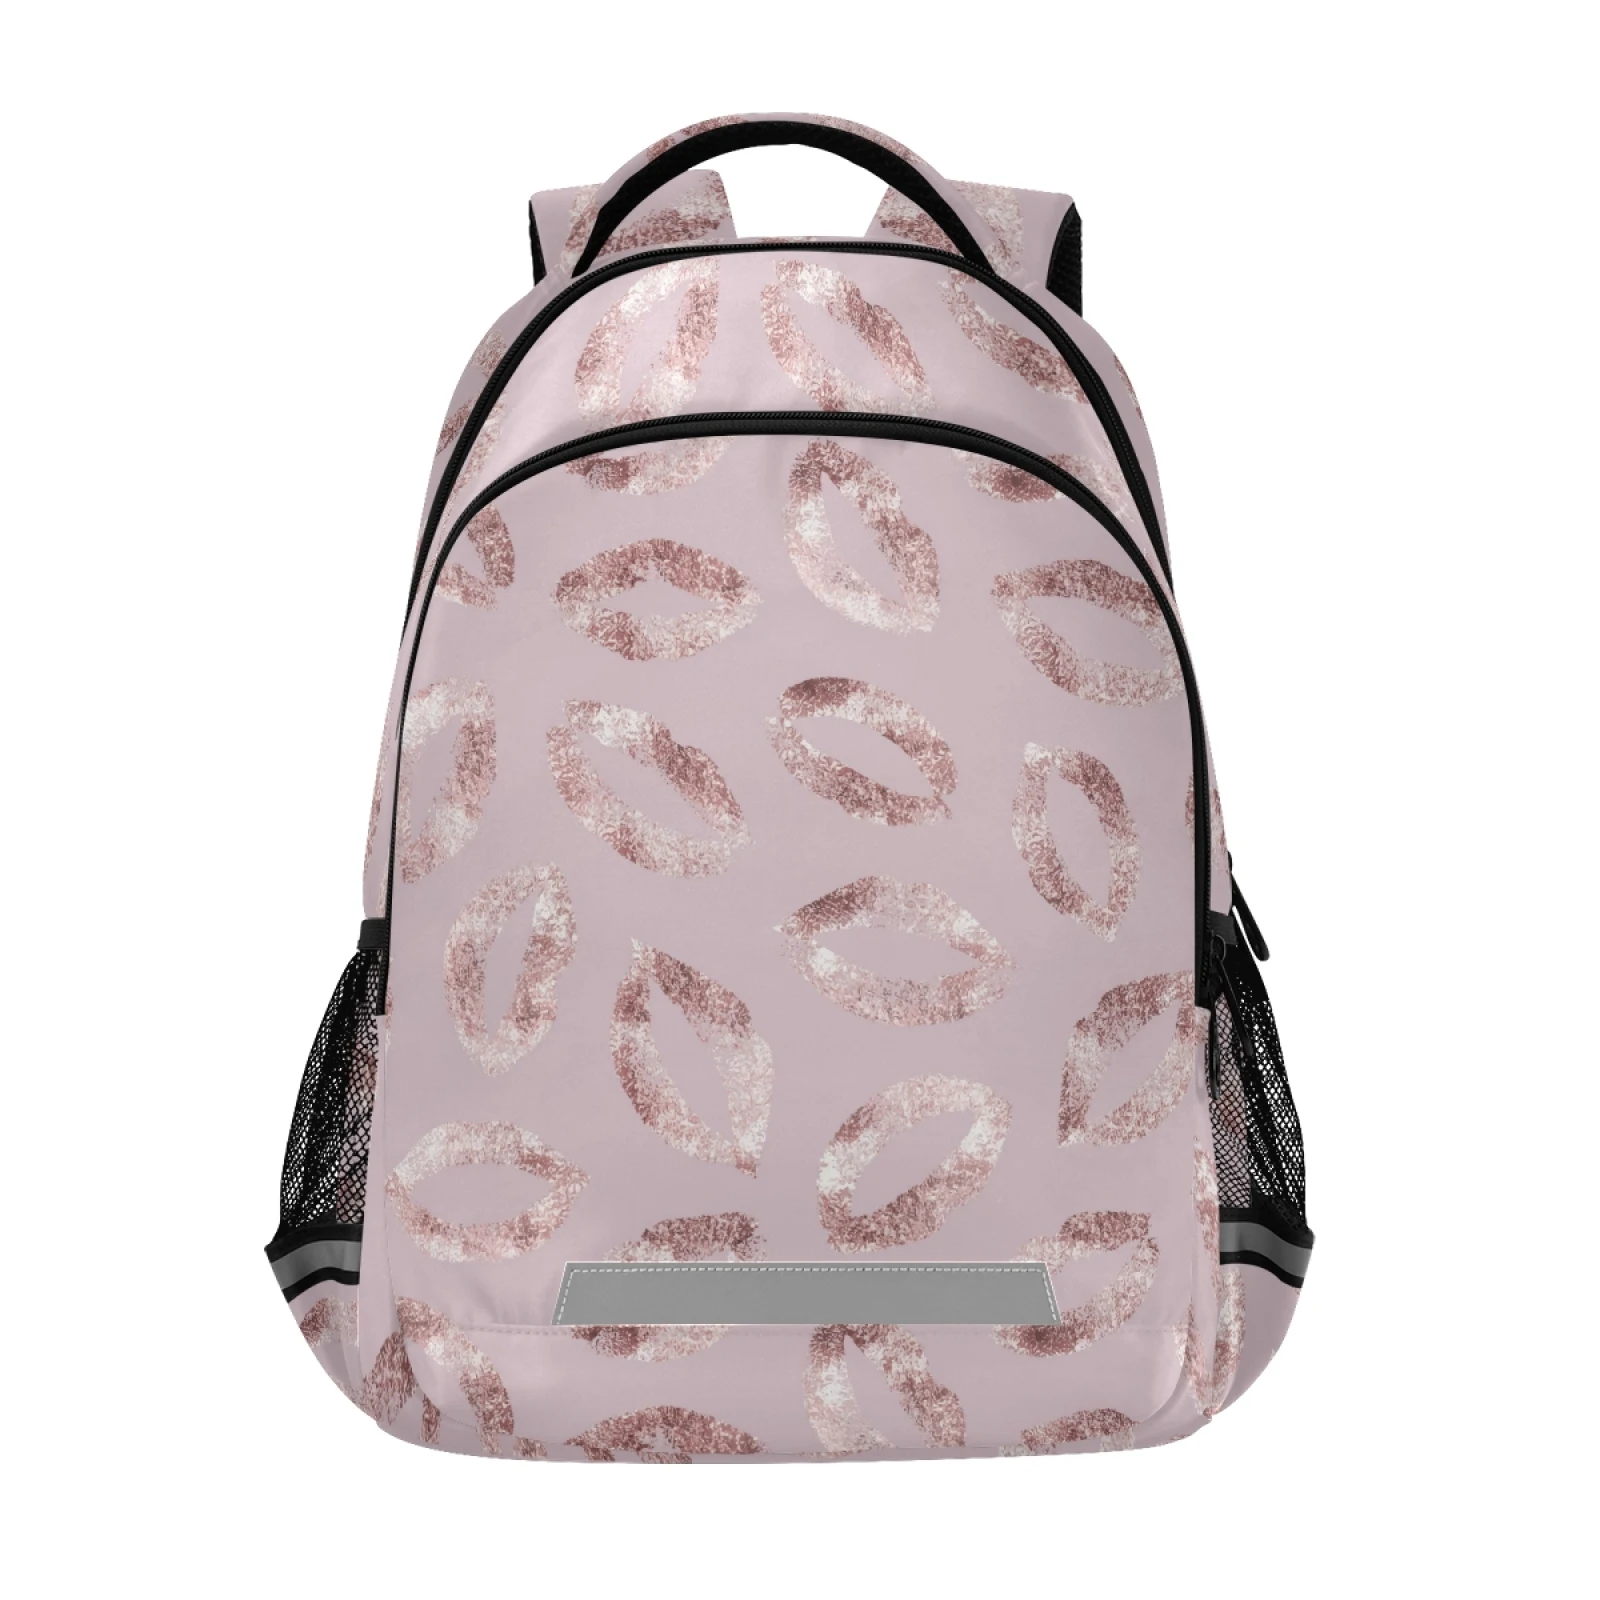 Рюкзак женский, с блестками, цвета розового золота, школьная сумка для девочек-подростков, для путешествий